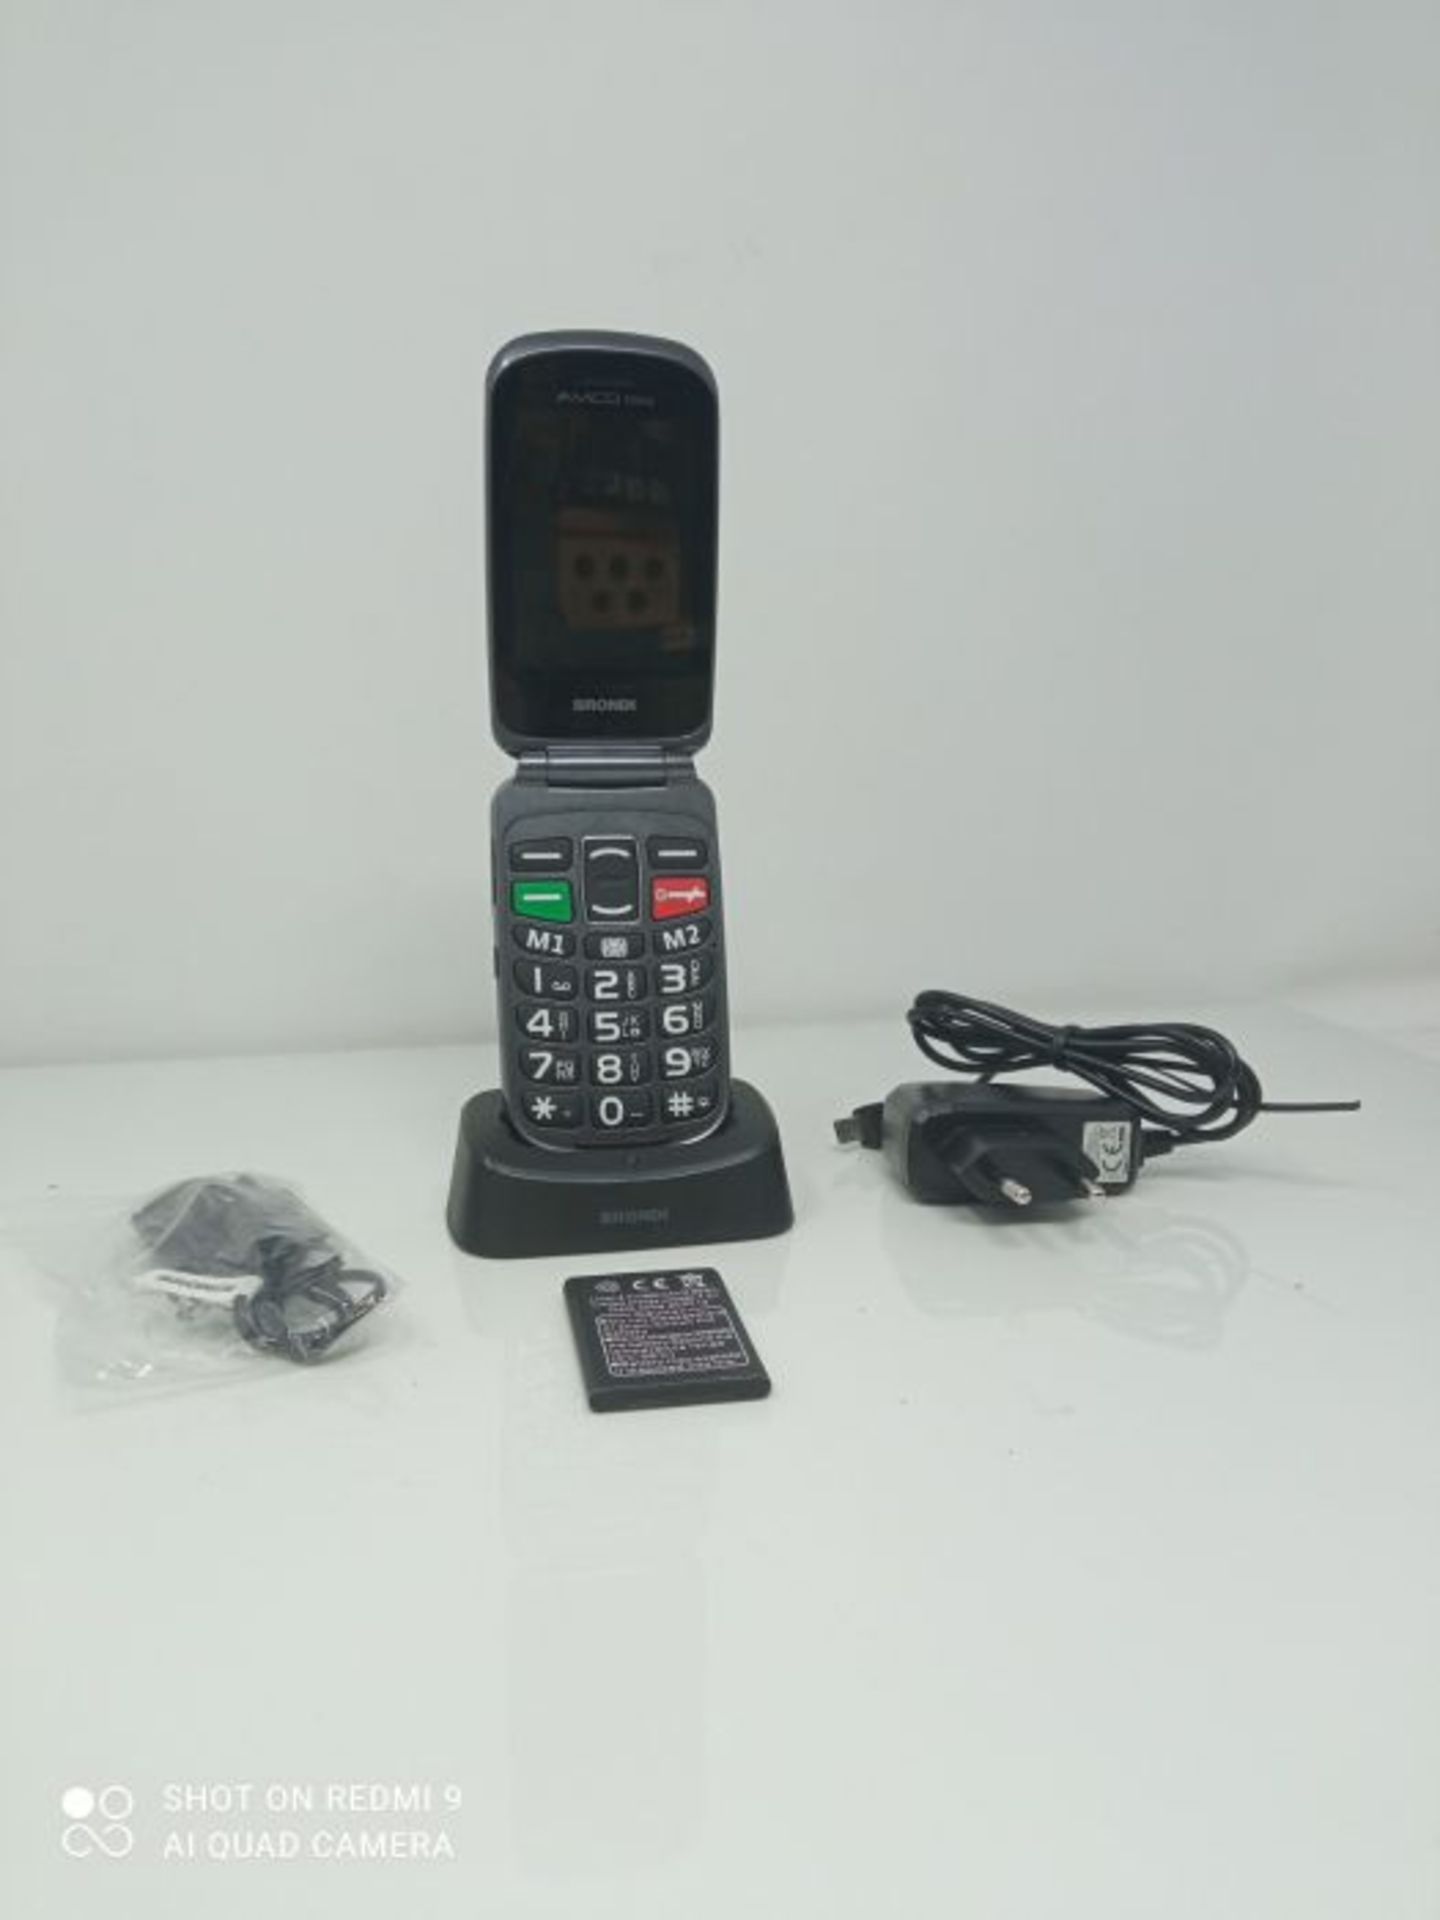 RRP £66.00 Brondi Amico Fedele, Telefono cellulare GSM per anziani con tasti grandi, tasto SOS e - Image 6 of 6